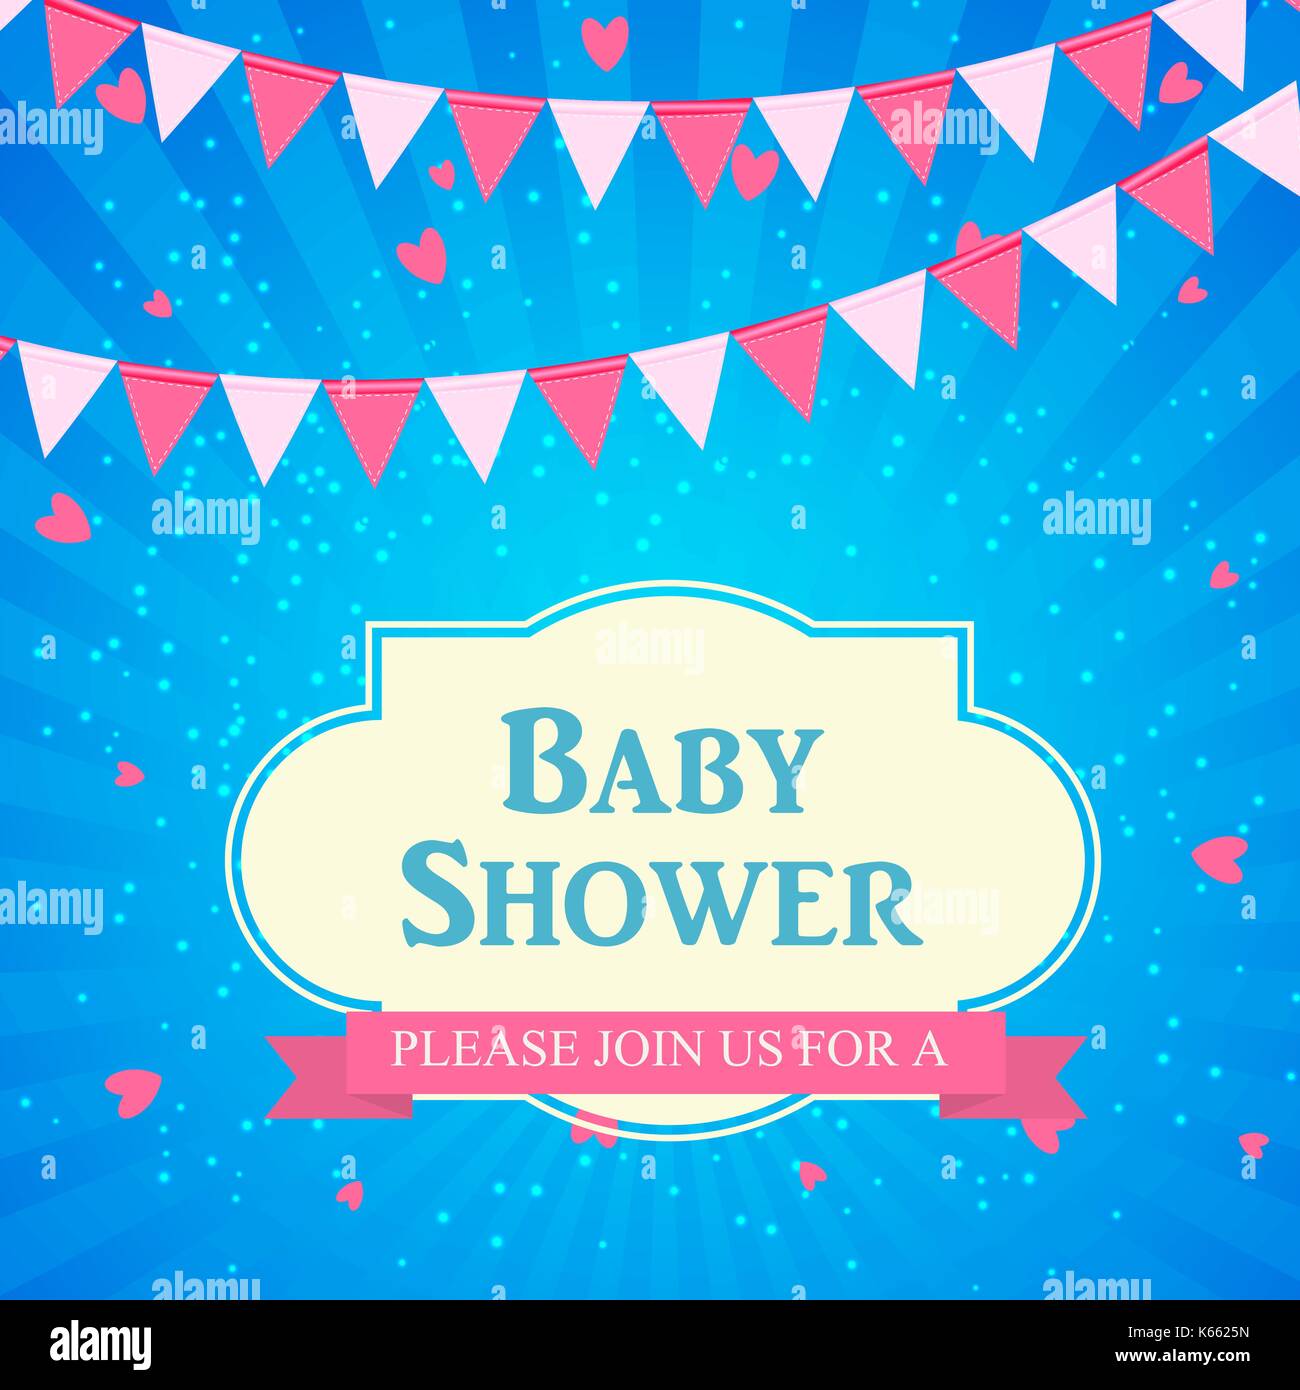 Baby Shower Invitation Vector Illustration Stock Vector